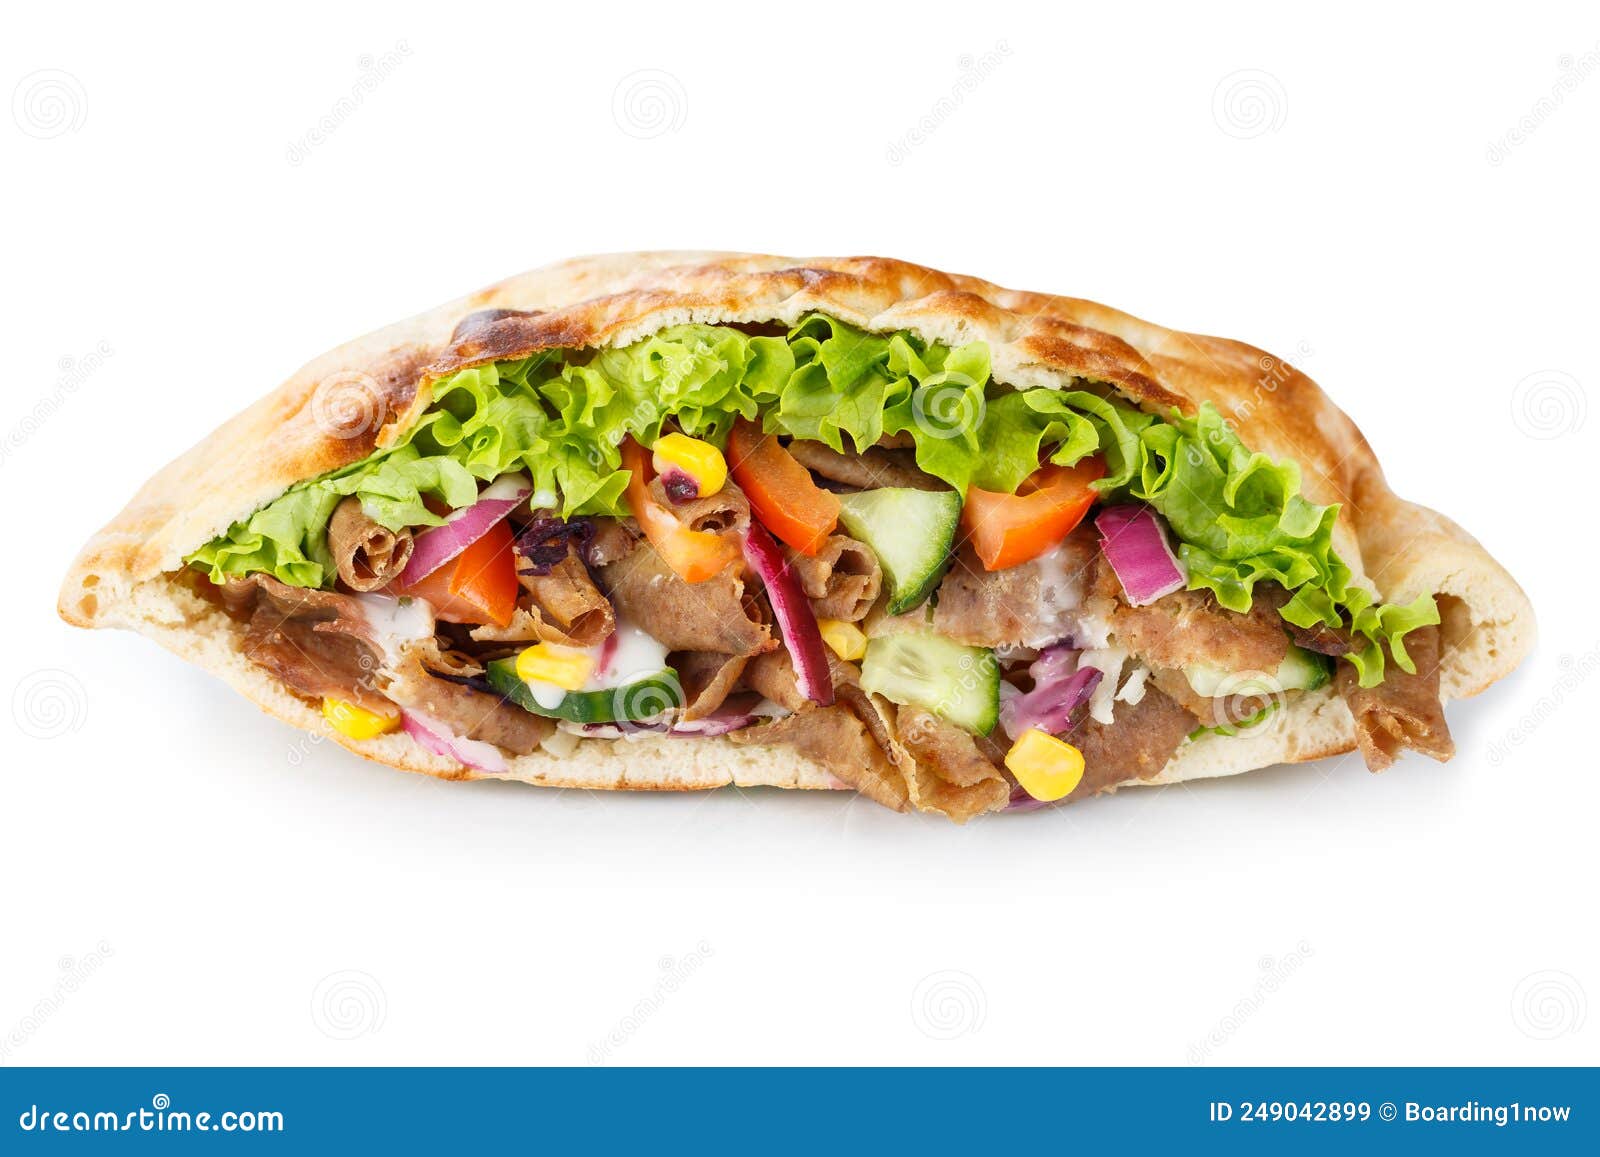 dÃÂ¶ner kebab doner kebap fast food in flatbread  on a white background